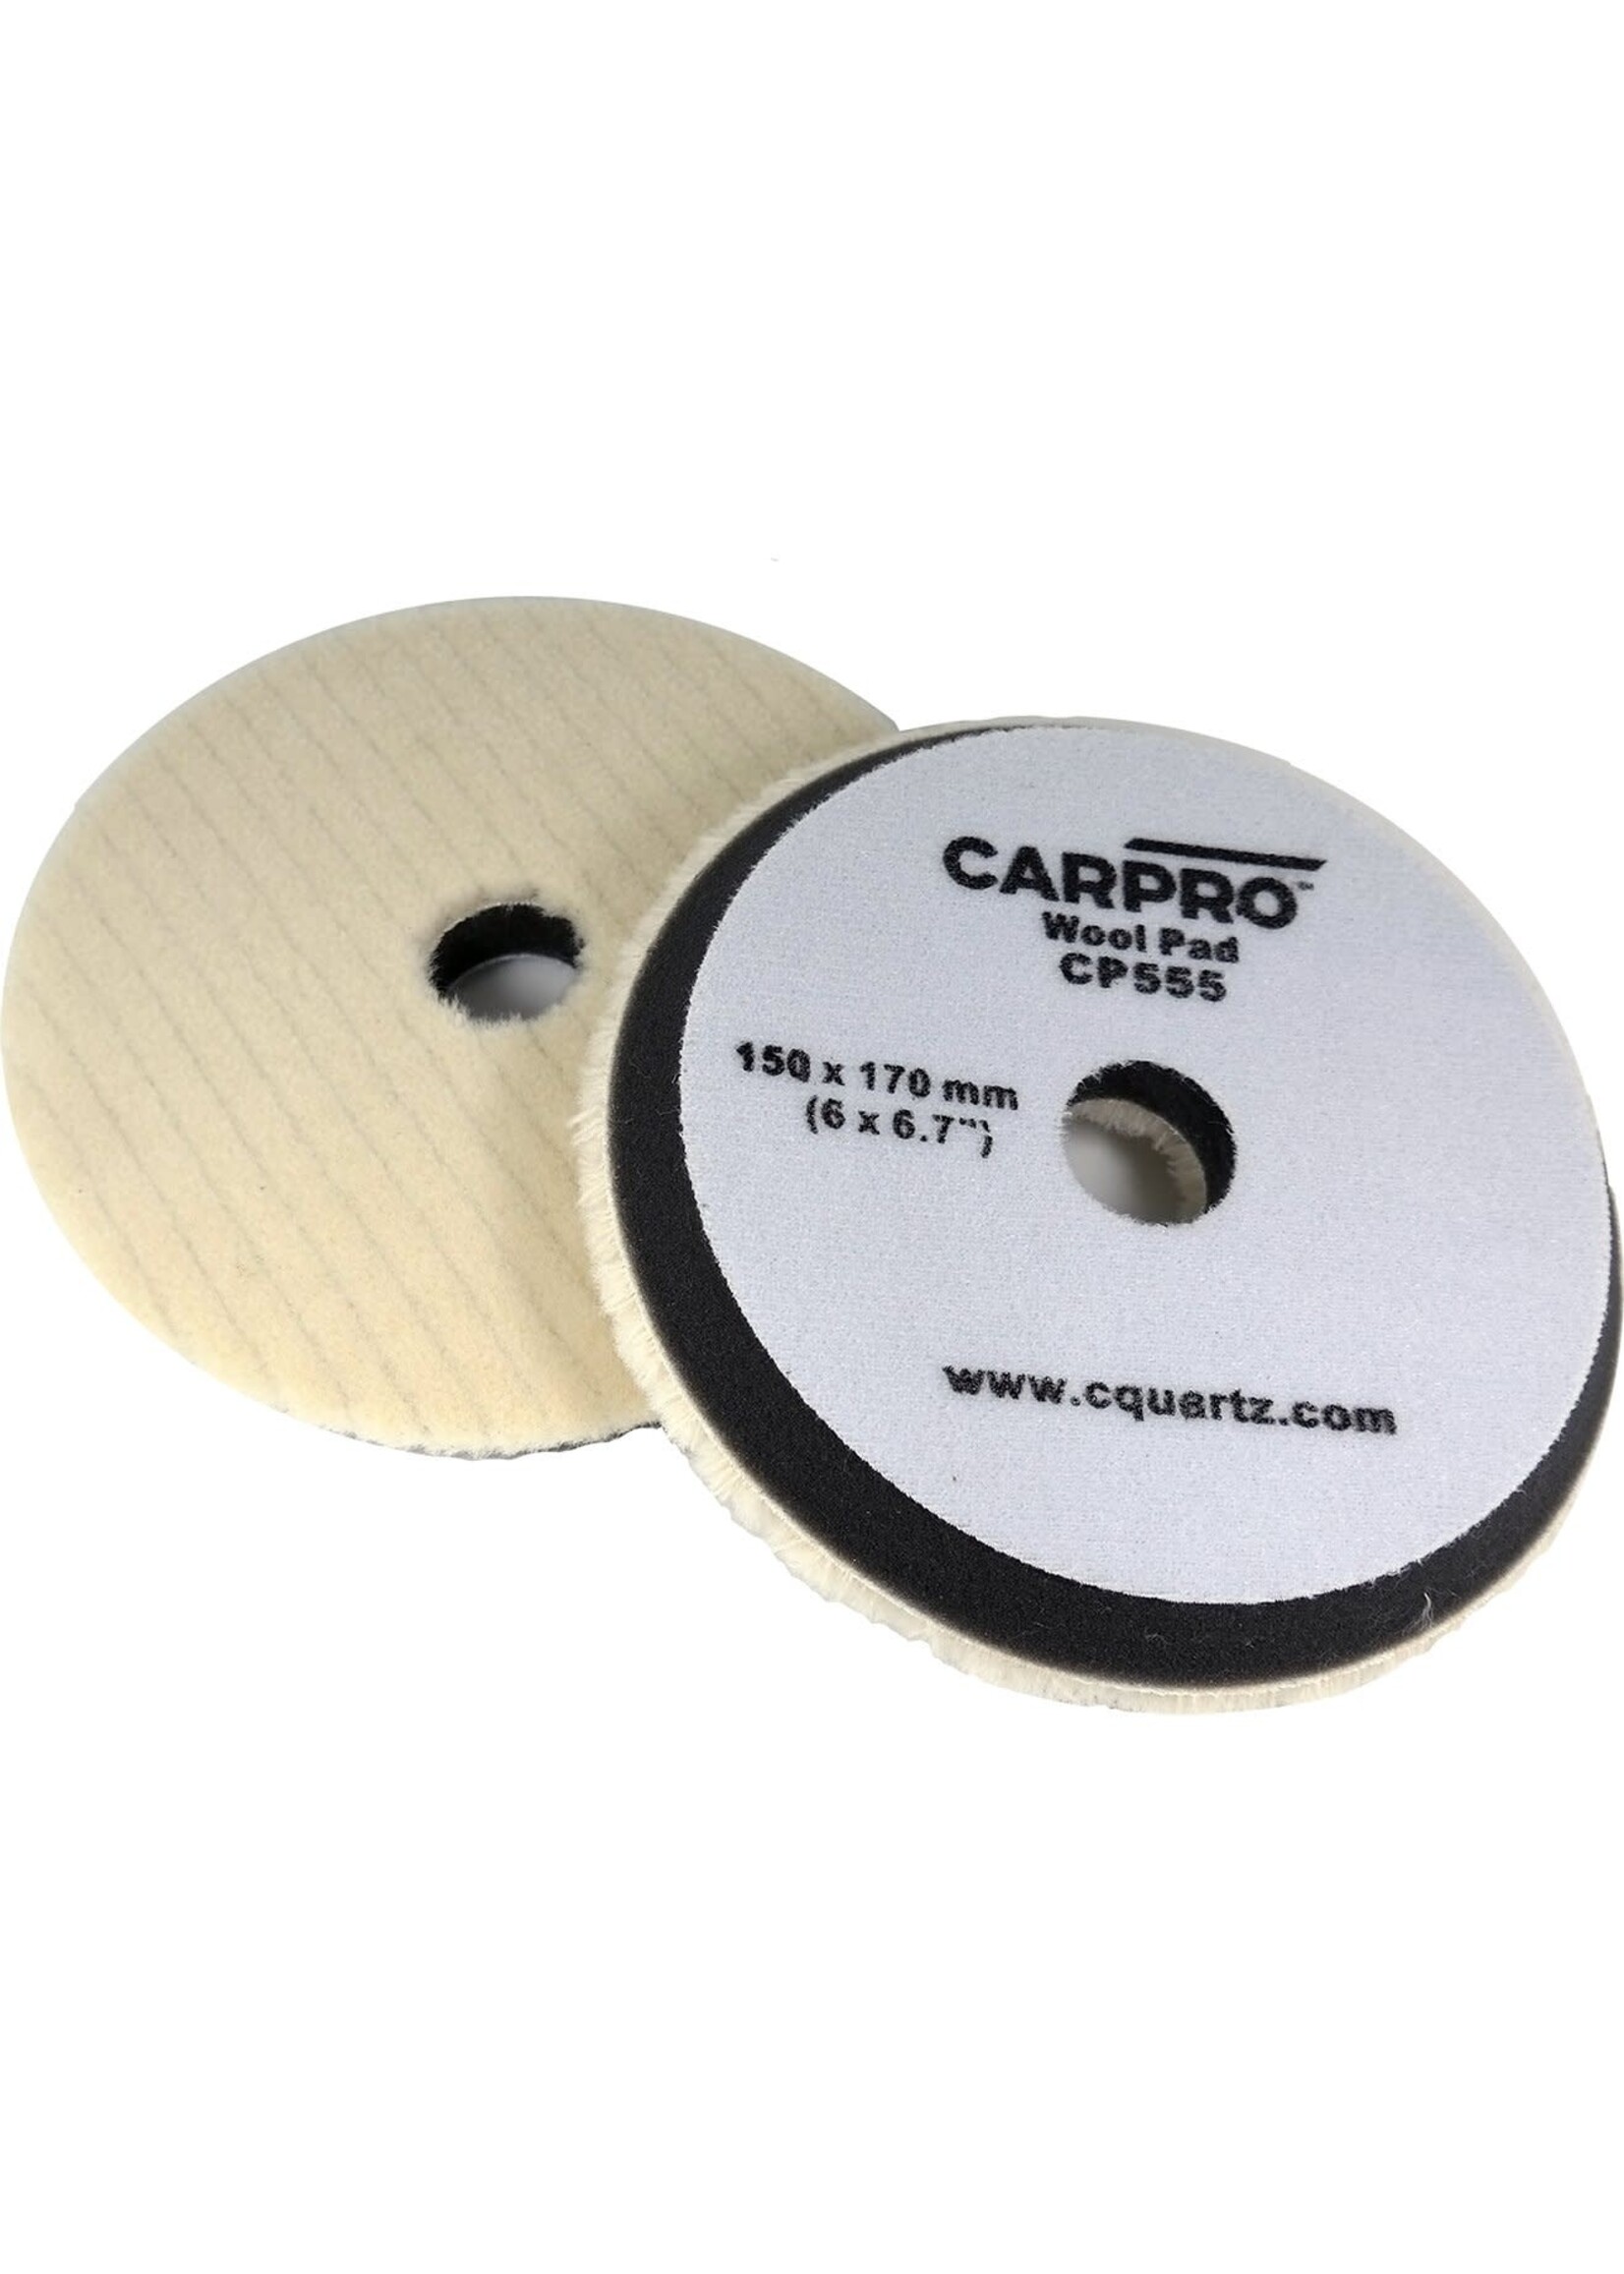 CARPRO Wool Ring Pad 7